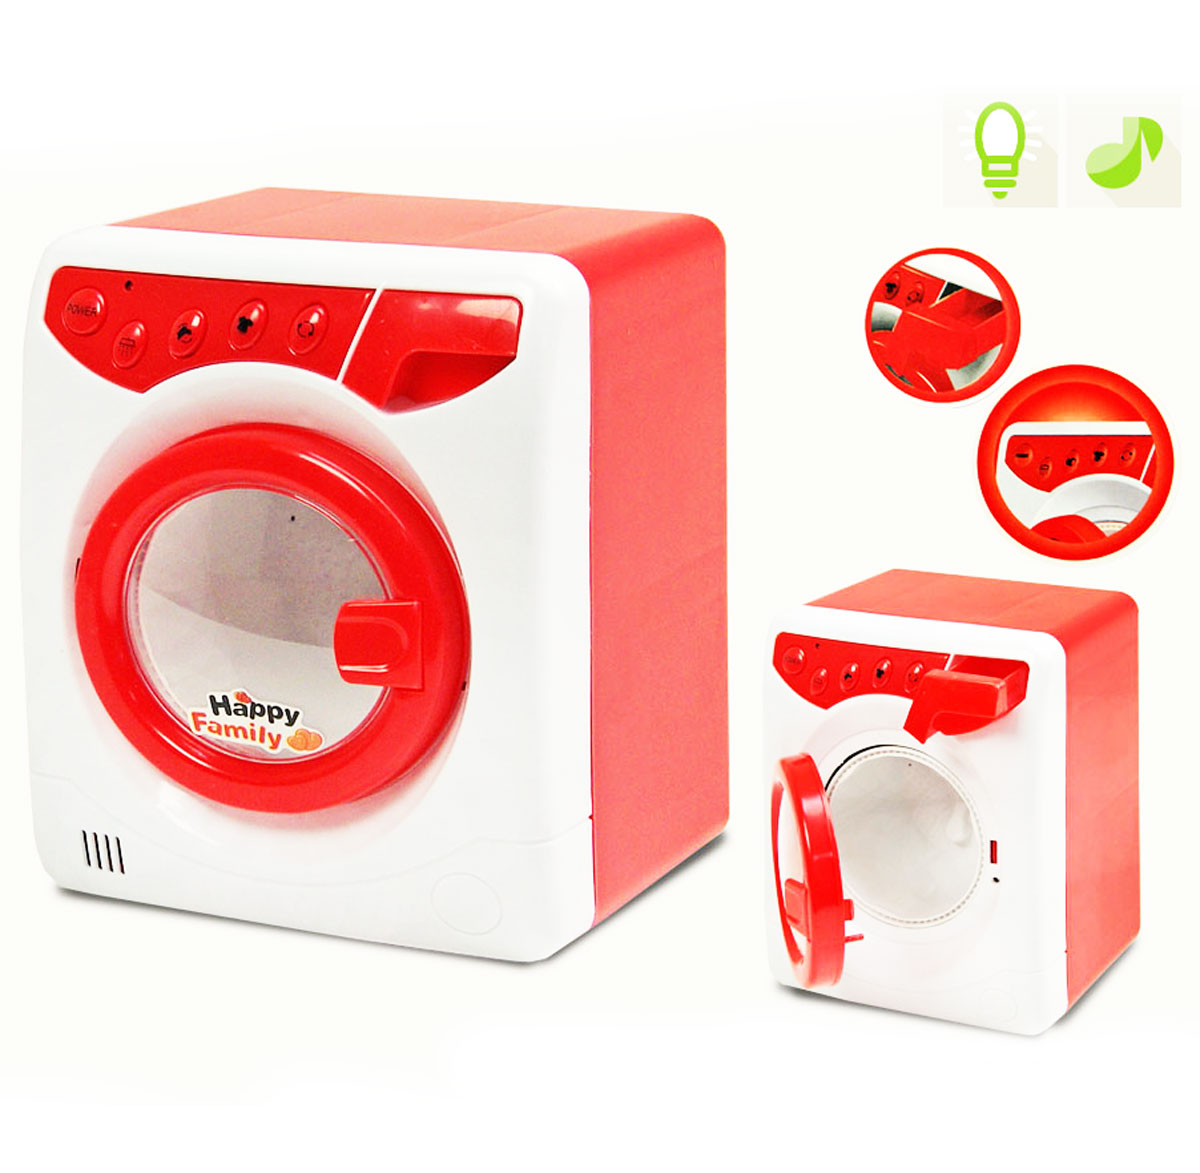 Іграшкова пральна машинка на батарейках